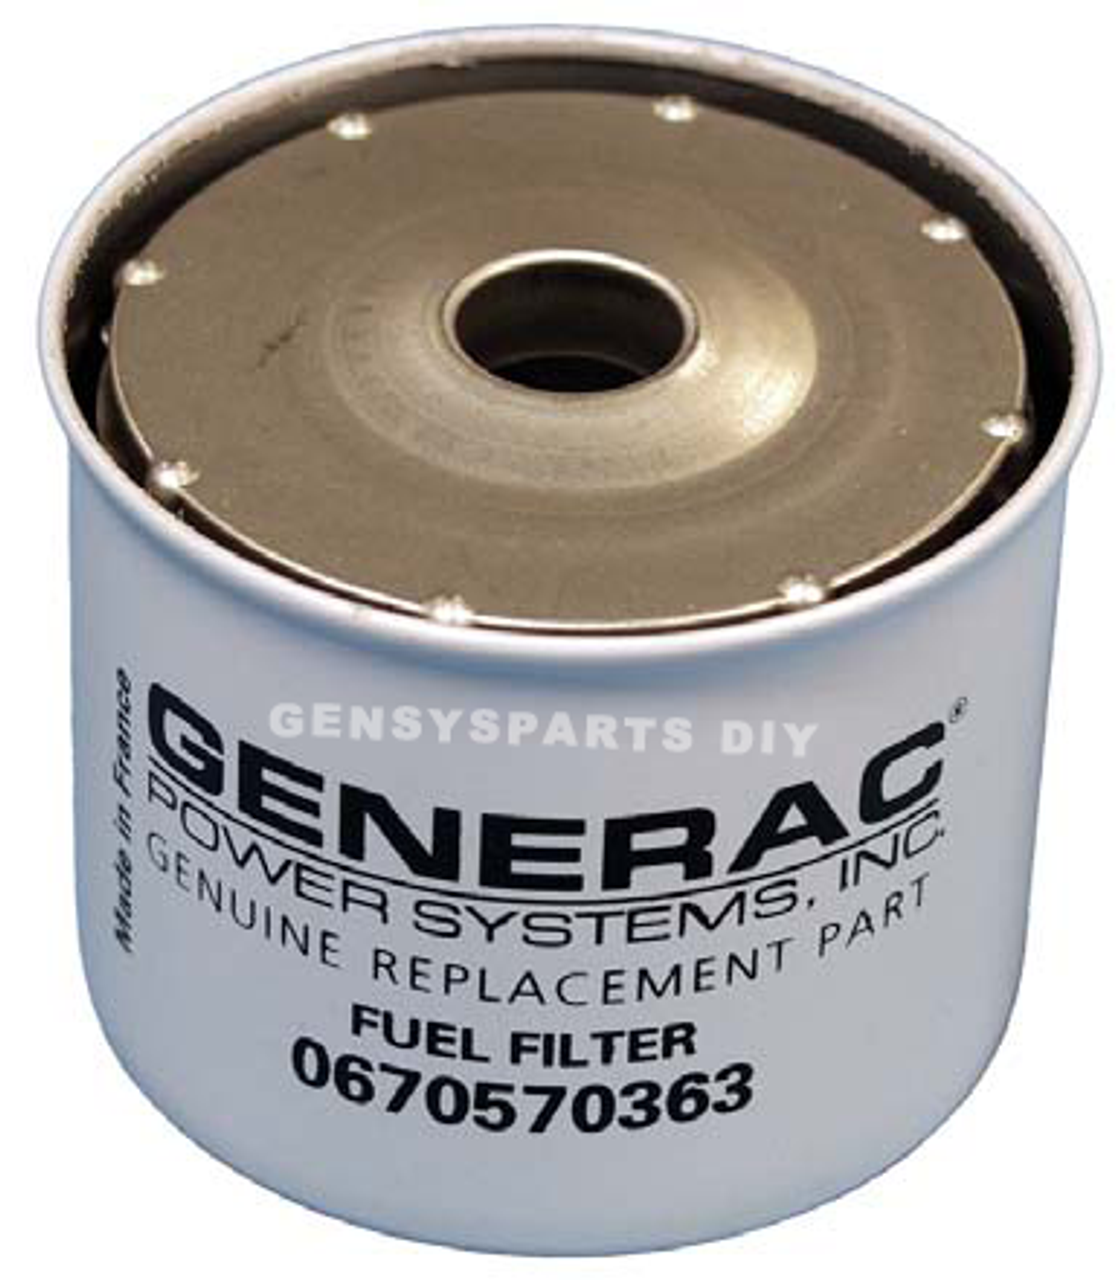 Generac Fuel Filter Element G0670570363